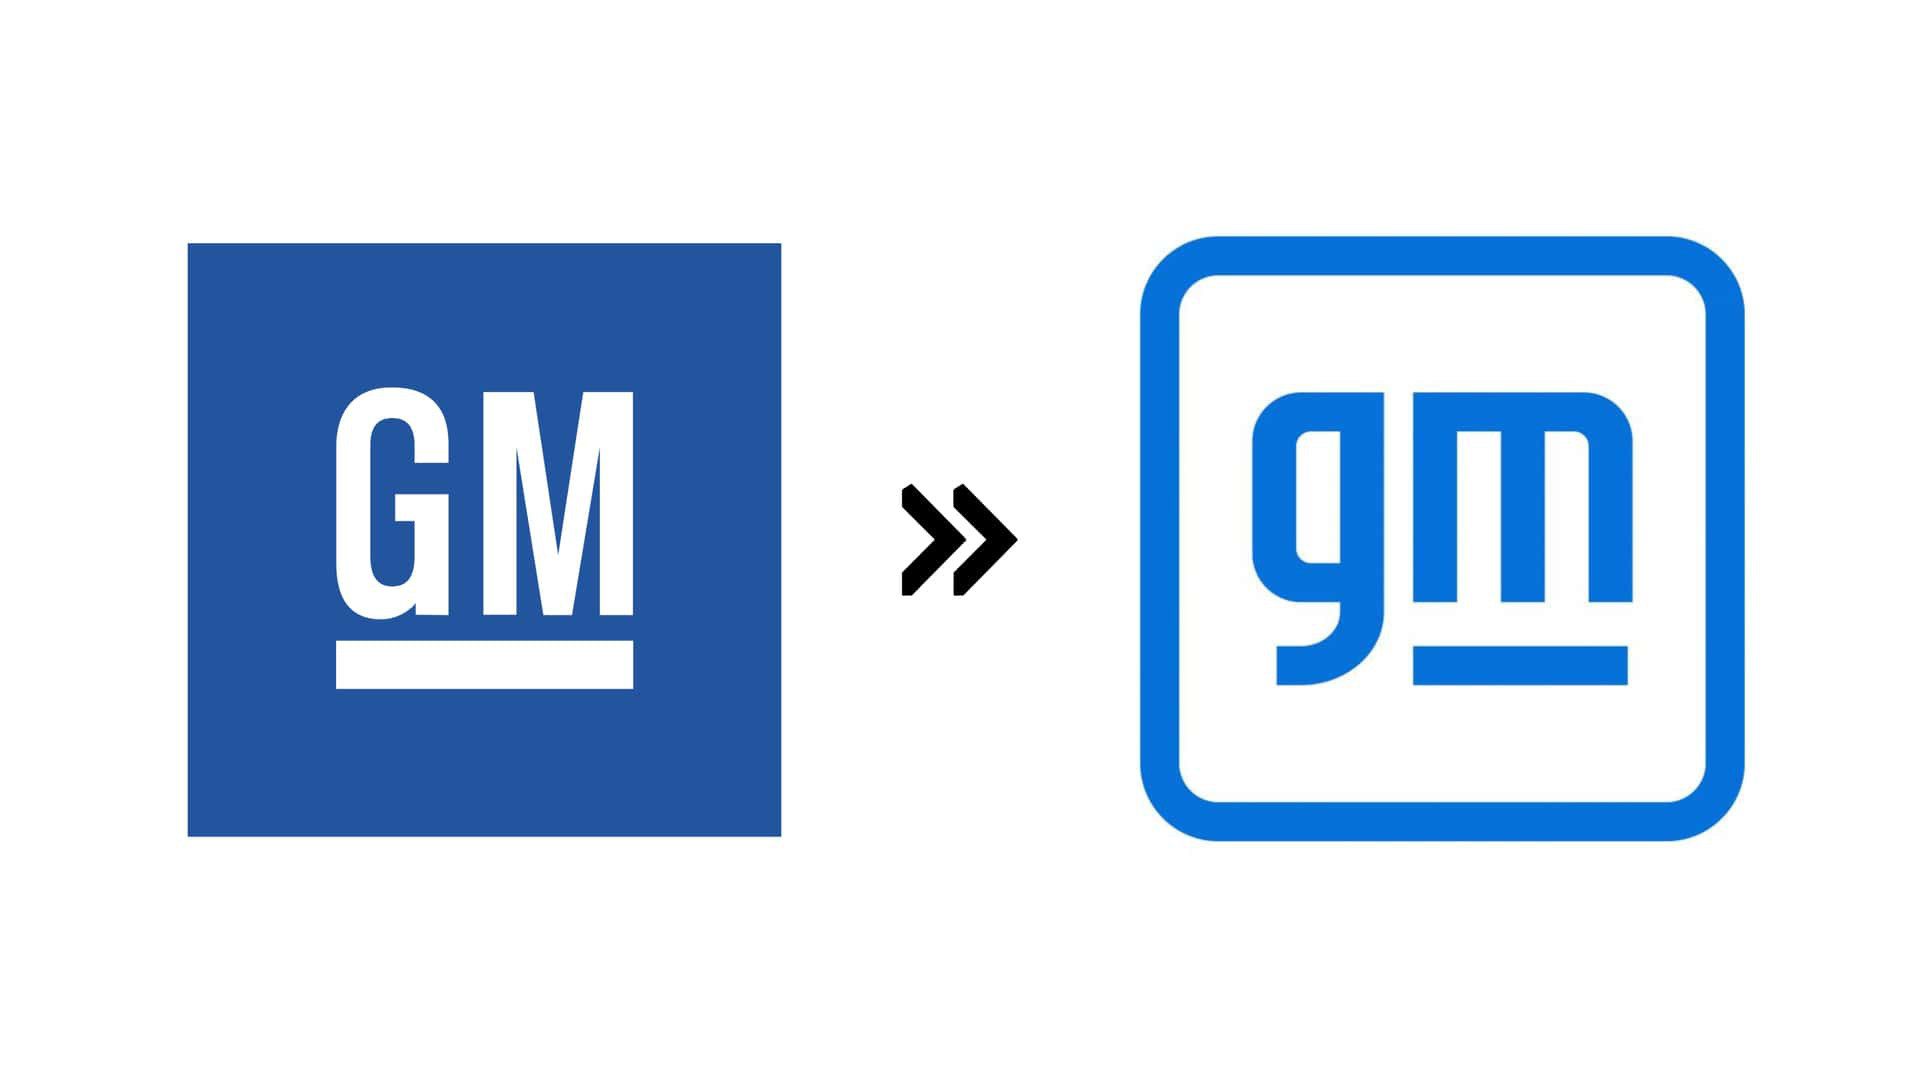 GM (2021): GM cập nhật logo bằng phông nền mới, đồng thời khối vuông bên ngoài cũng được cách điệu hơn đáng kể nhờ cách phối màu mới. Dấu gạch chân nay chỉ còn đặt dưới chữ M - Ảnh: Motor1